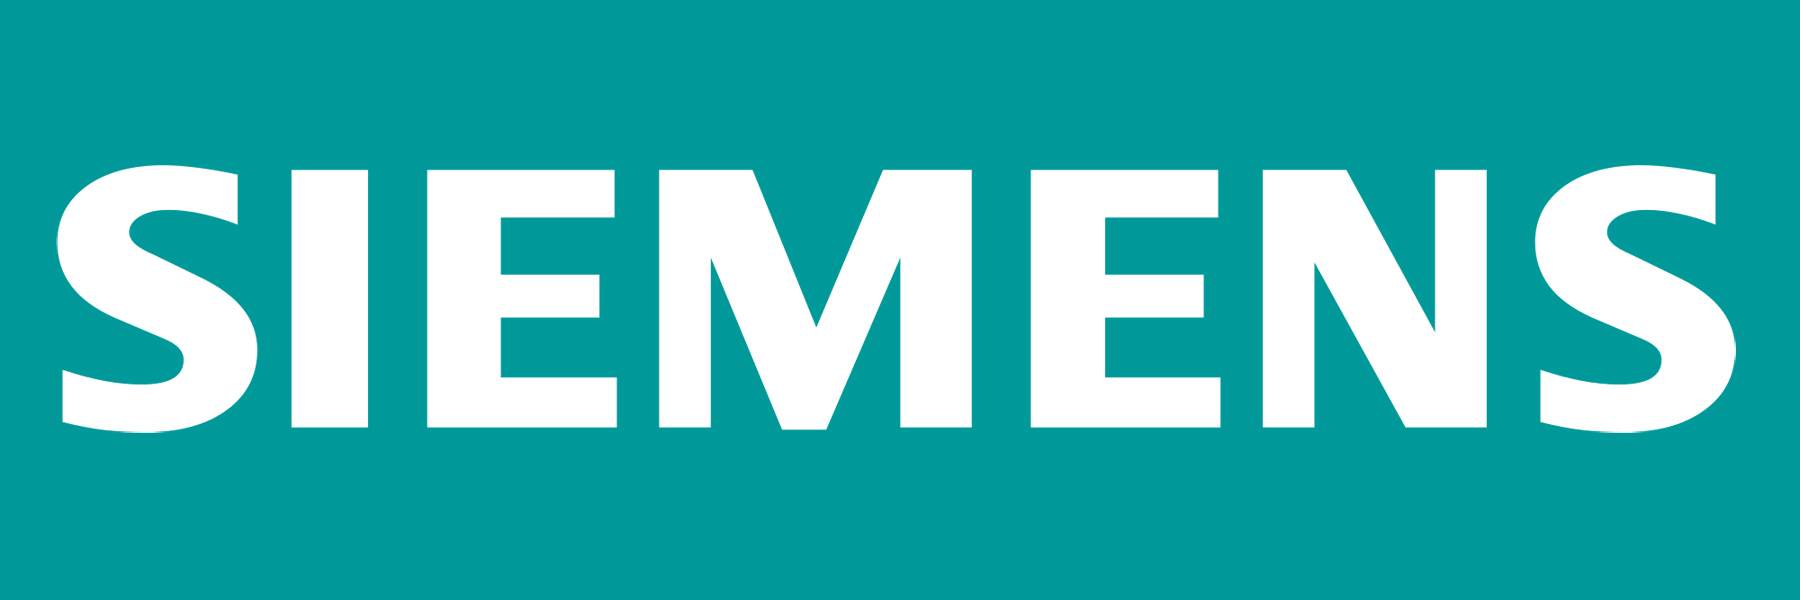 Siemens logo : histoire, signification et évolution, symbole